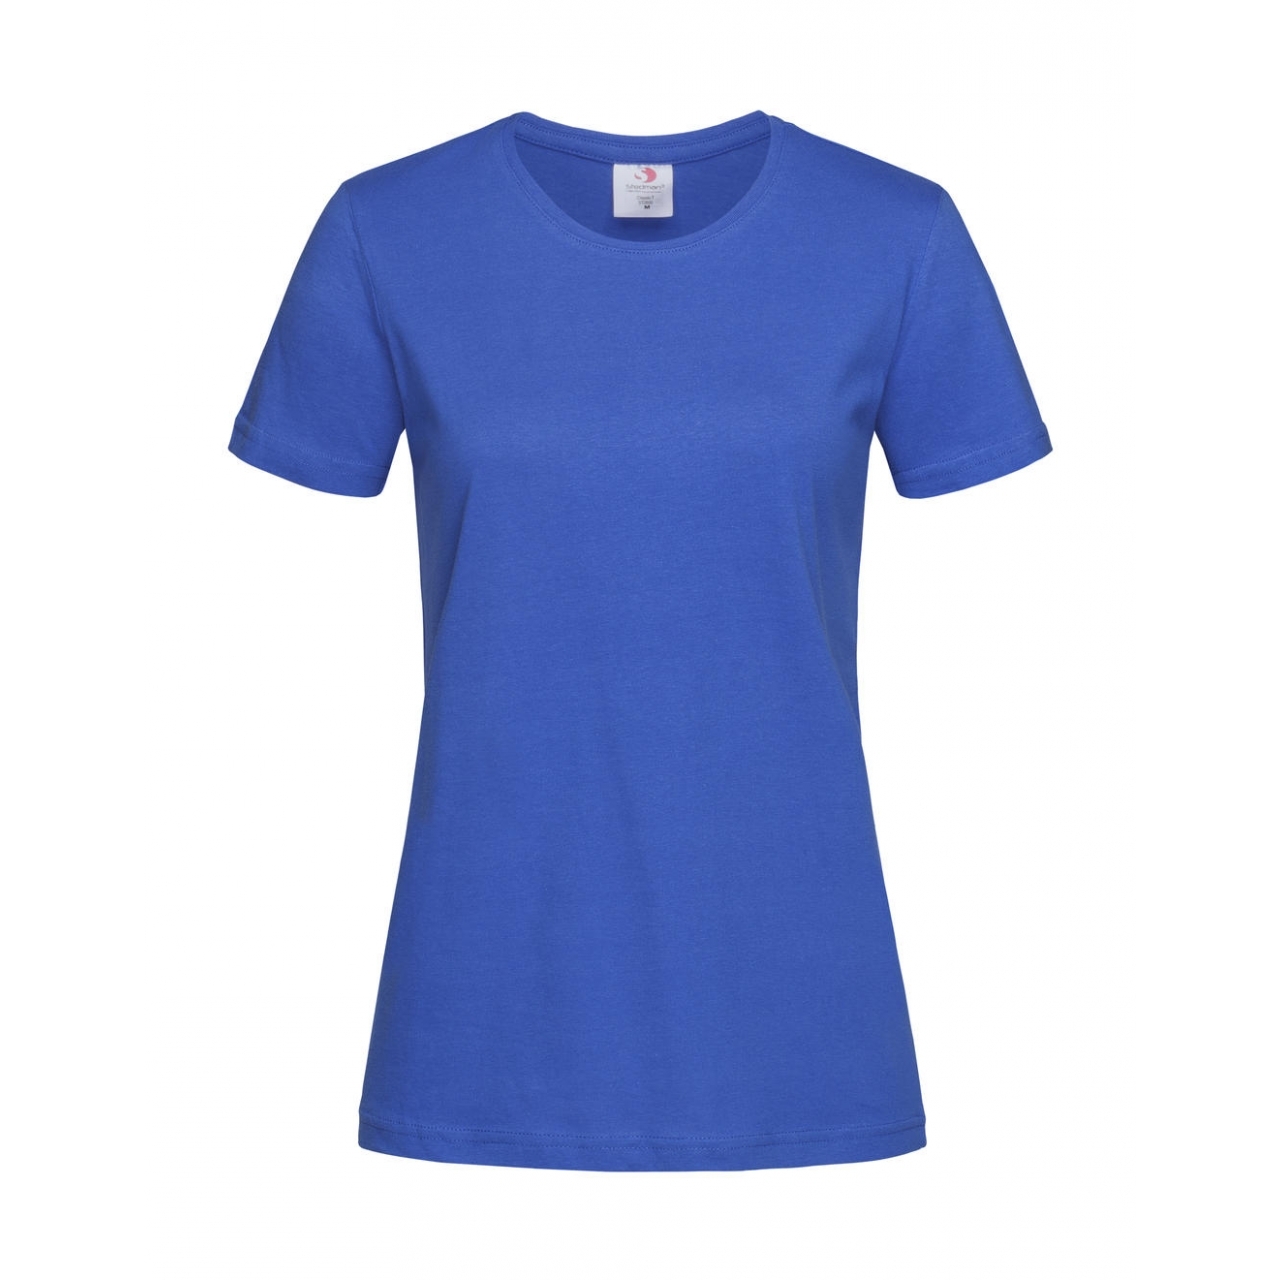 Tričko dámské Stedman Fitted s kulatým výstřihem - modré, L